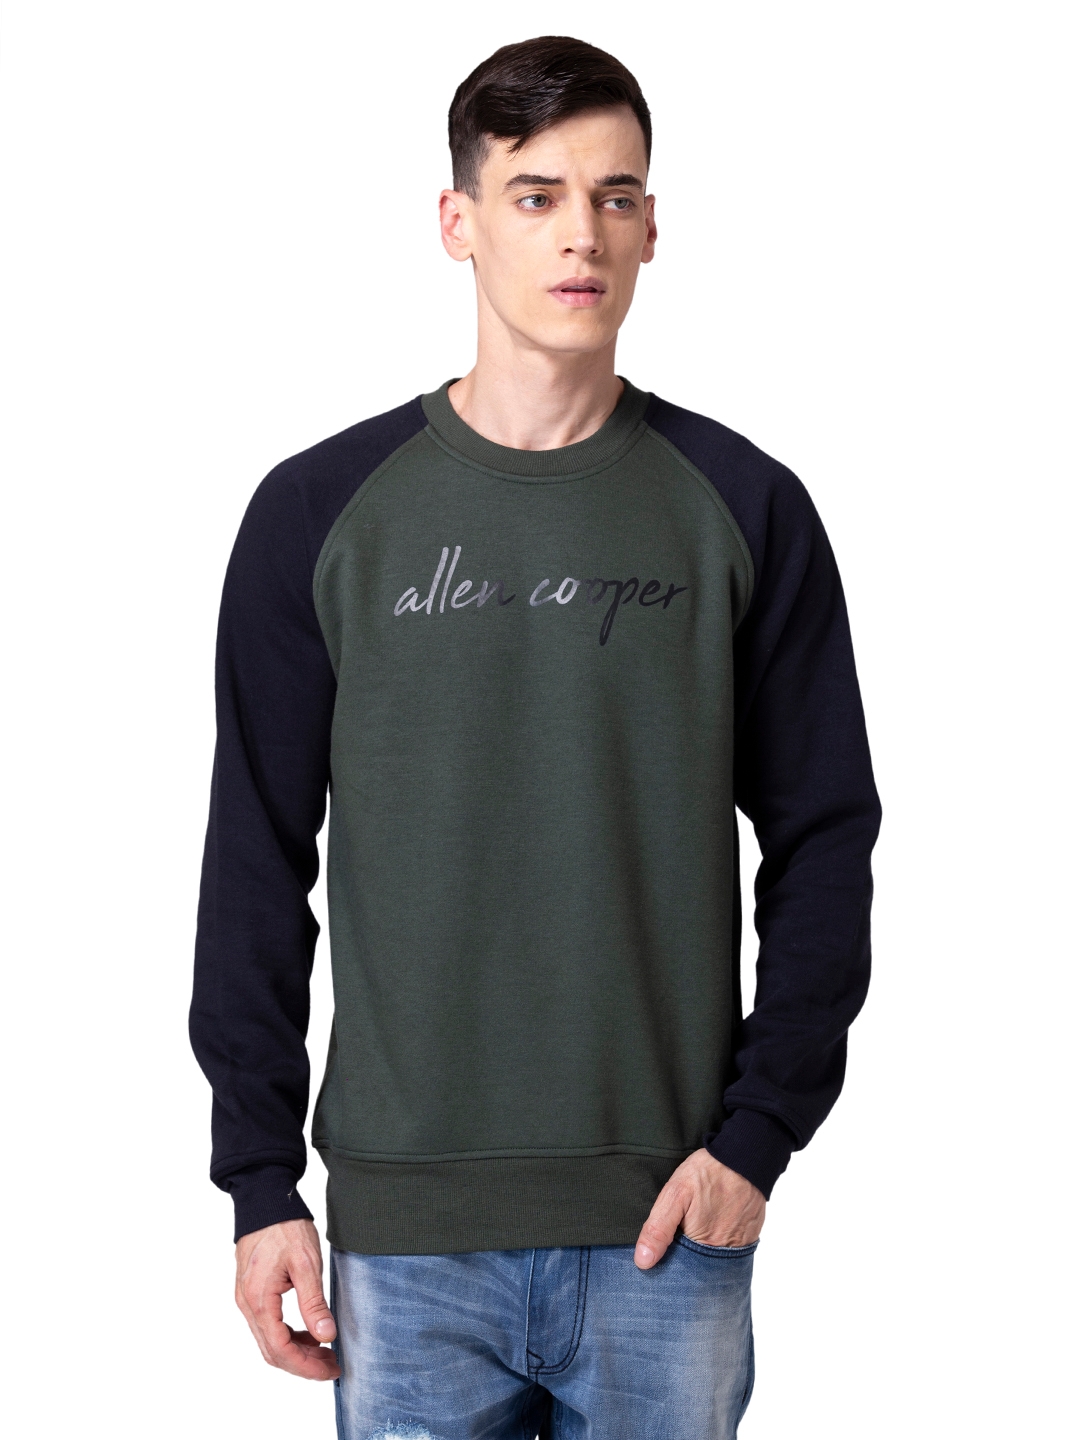 Allen Cooper | Allen Cooper Olive Solid Round Neck Sweatshirt For Men